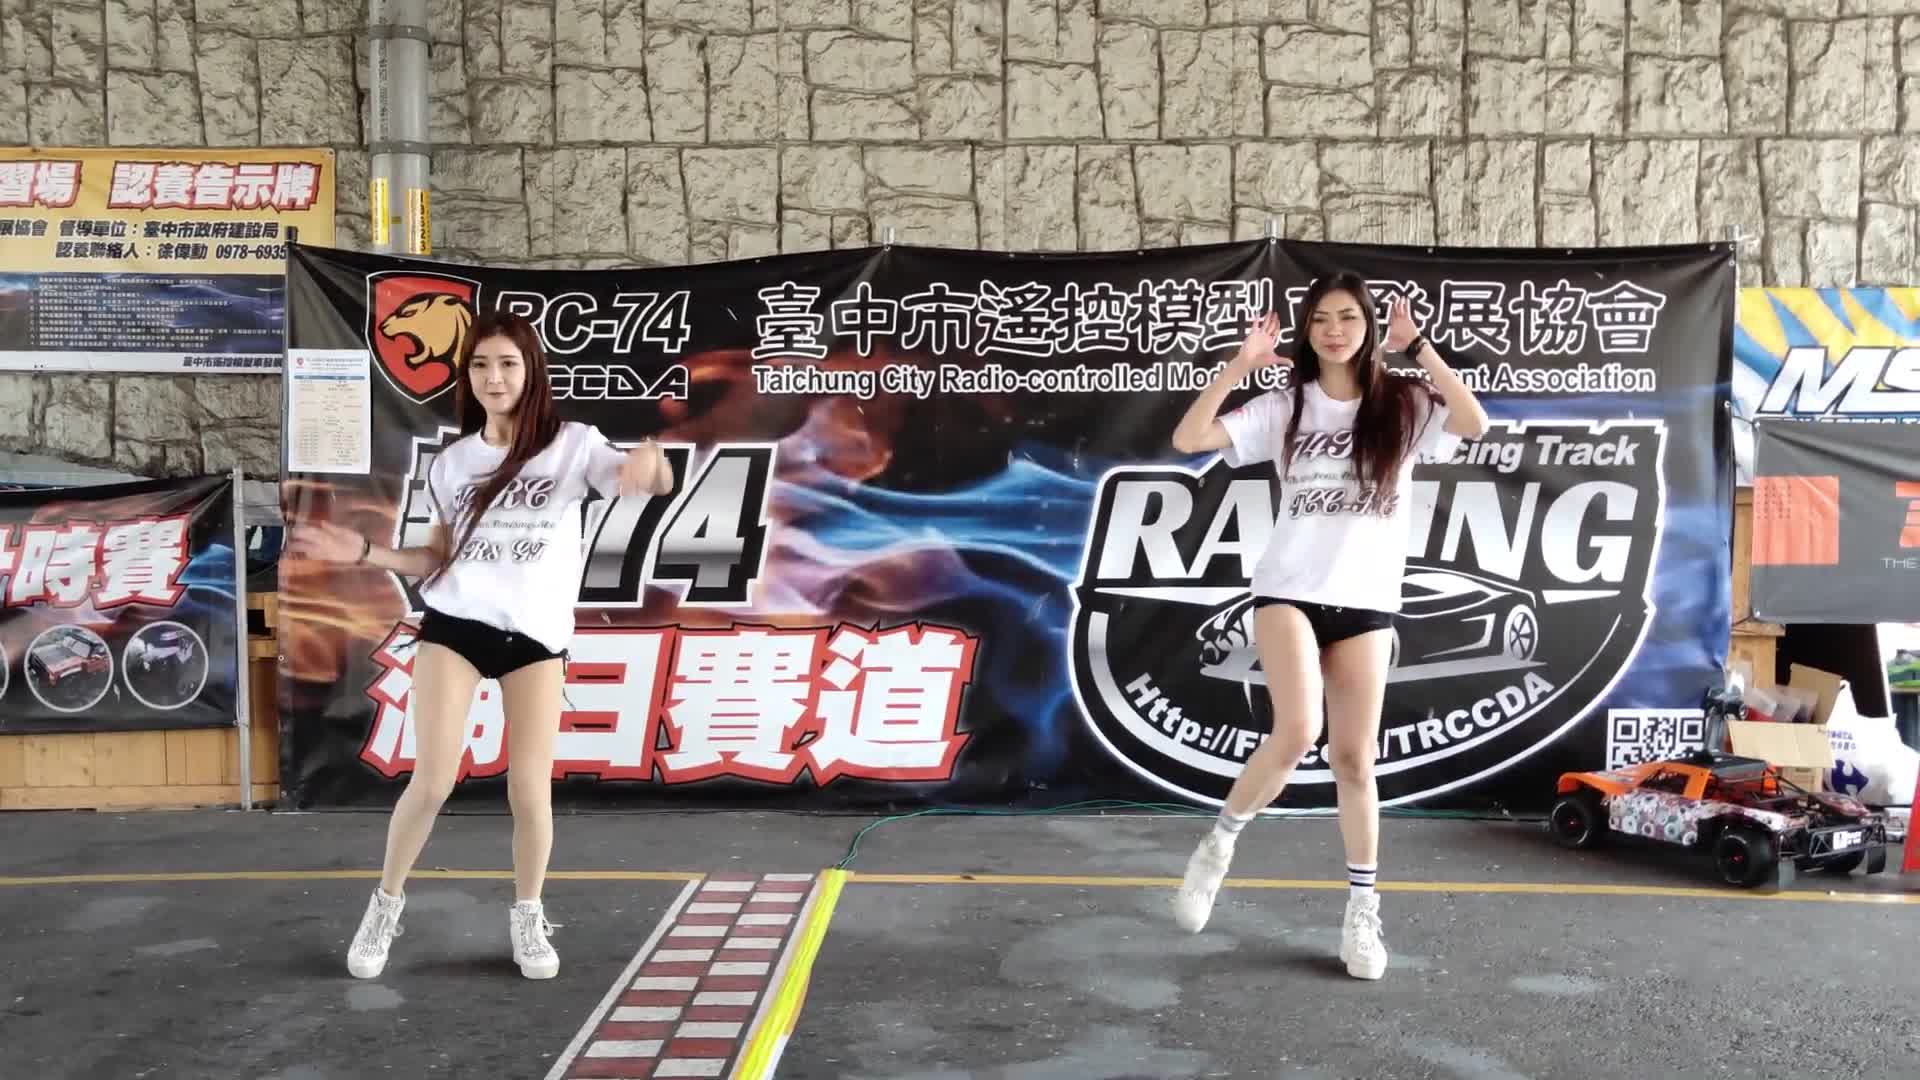 臺中市遙控模型車發展協會遙控車聚活動 跳跳糖PopCandy-阿布.格格 舞蹈表演熱舞4